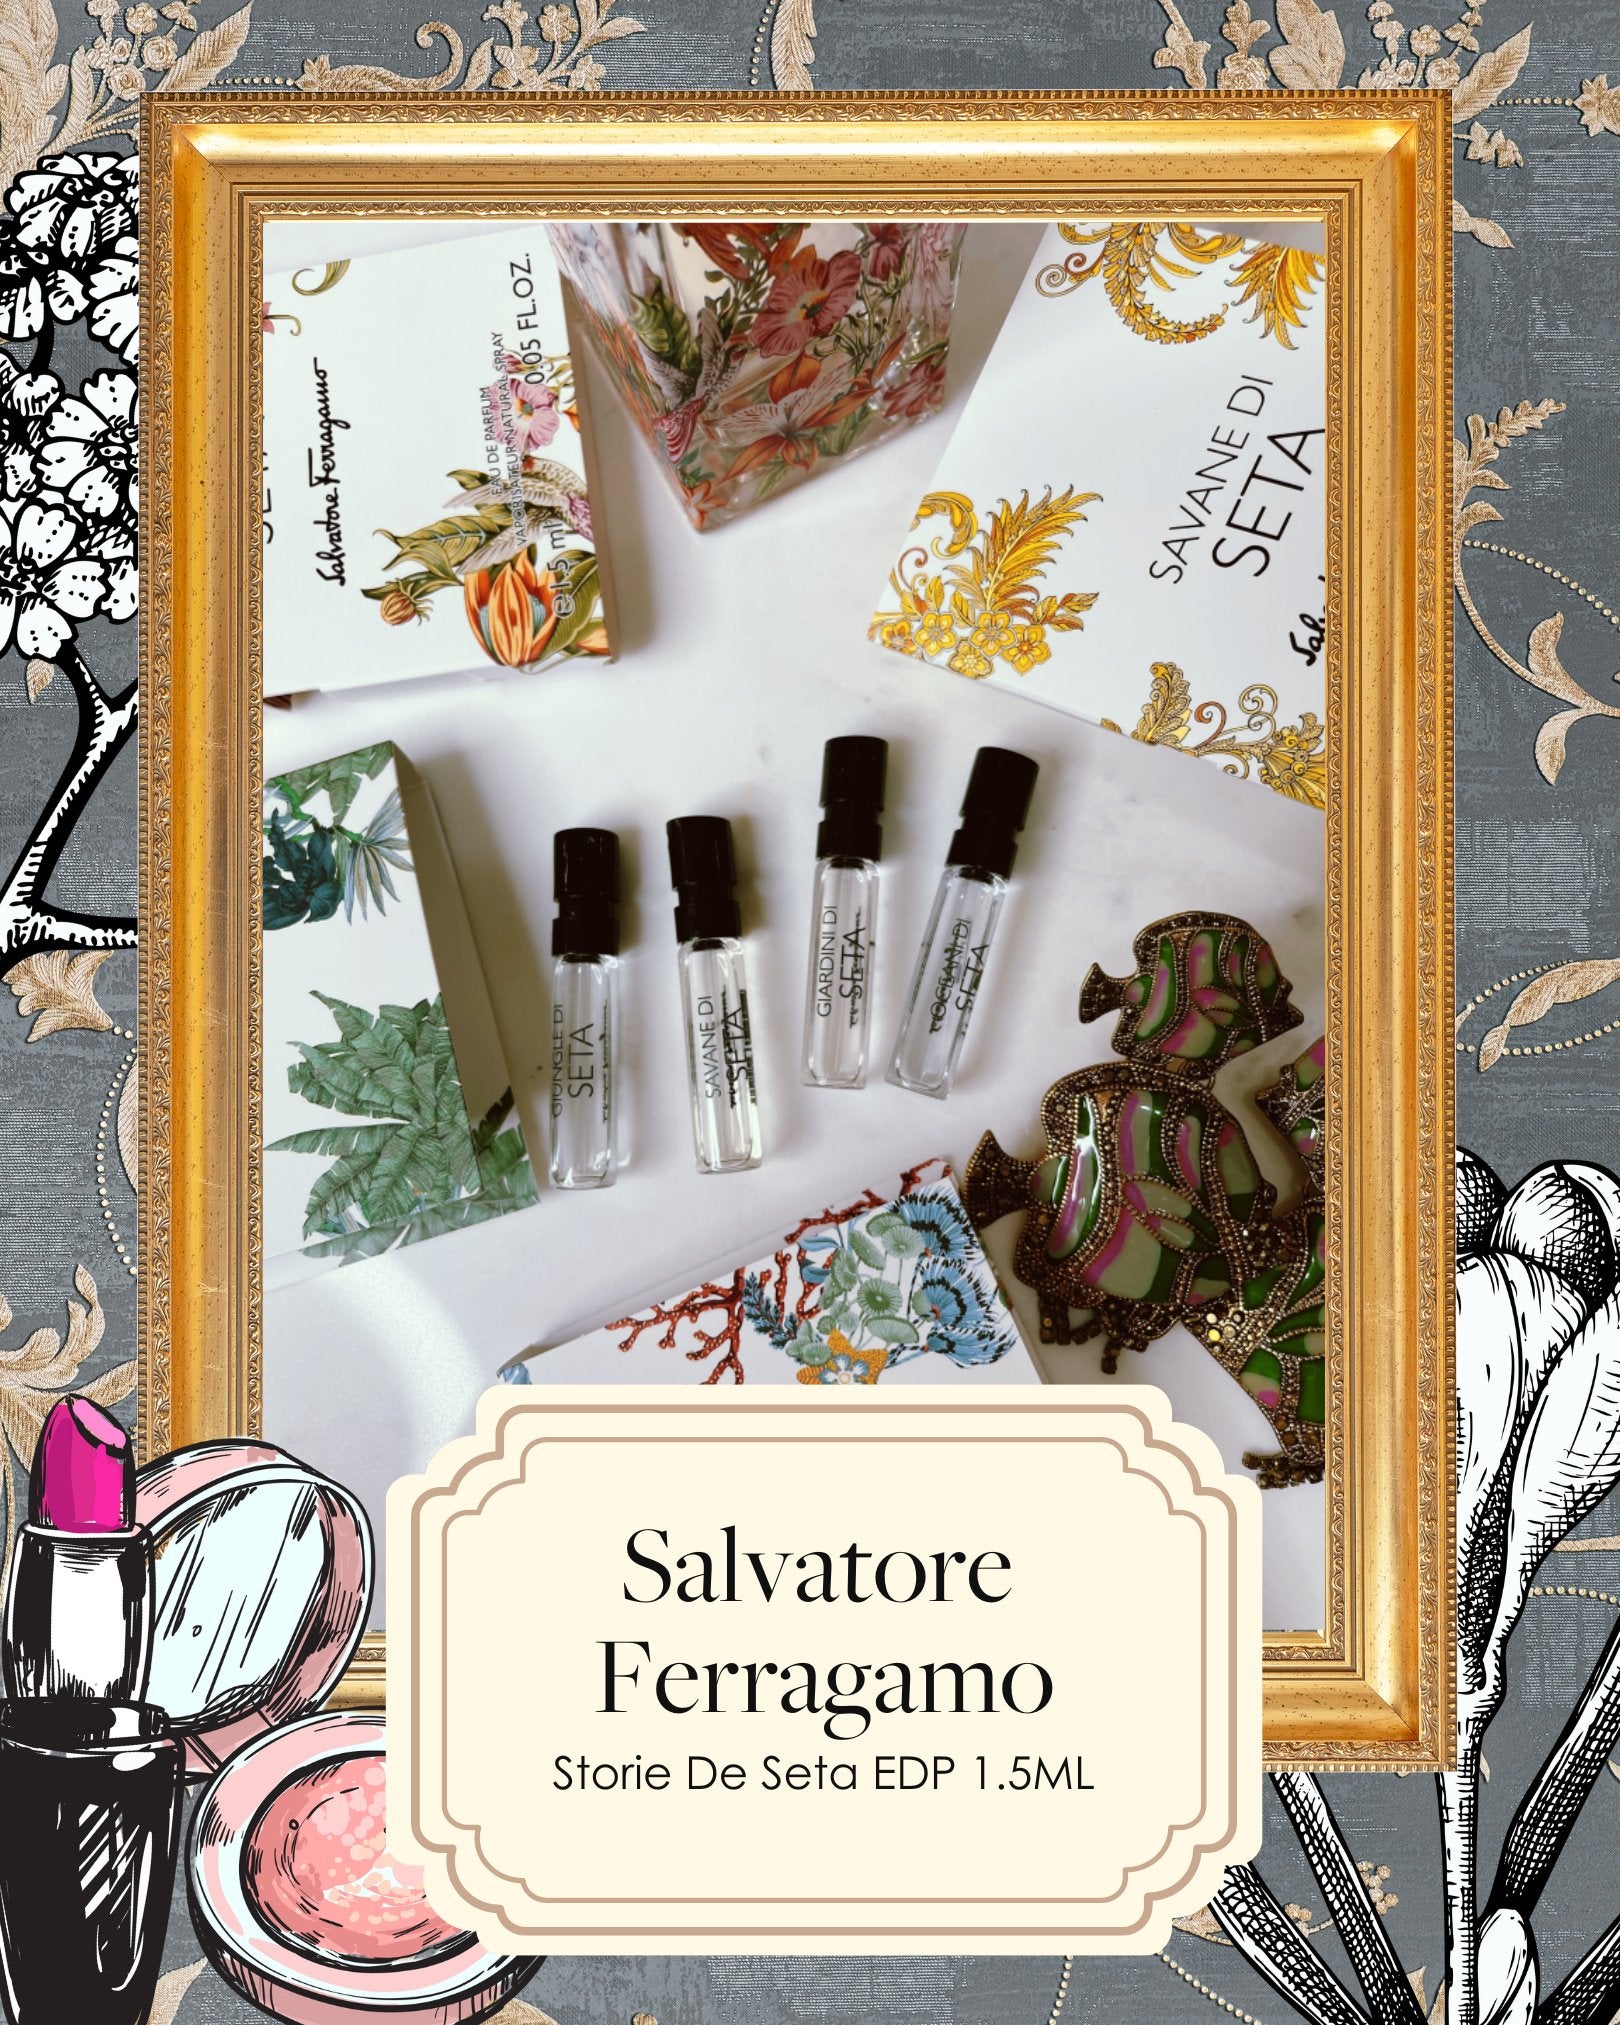 Inside The Box: Salvatore Ferragamo Storie di Seta